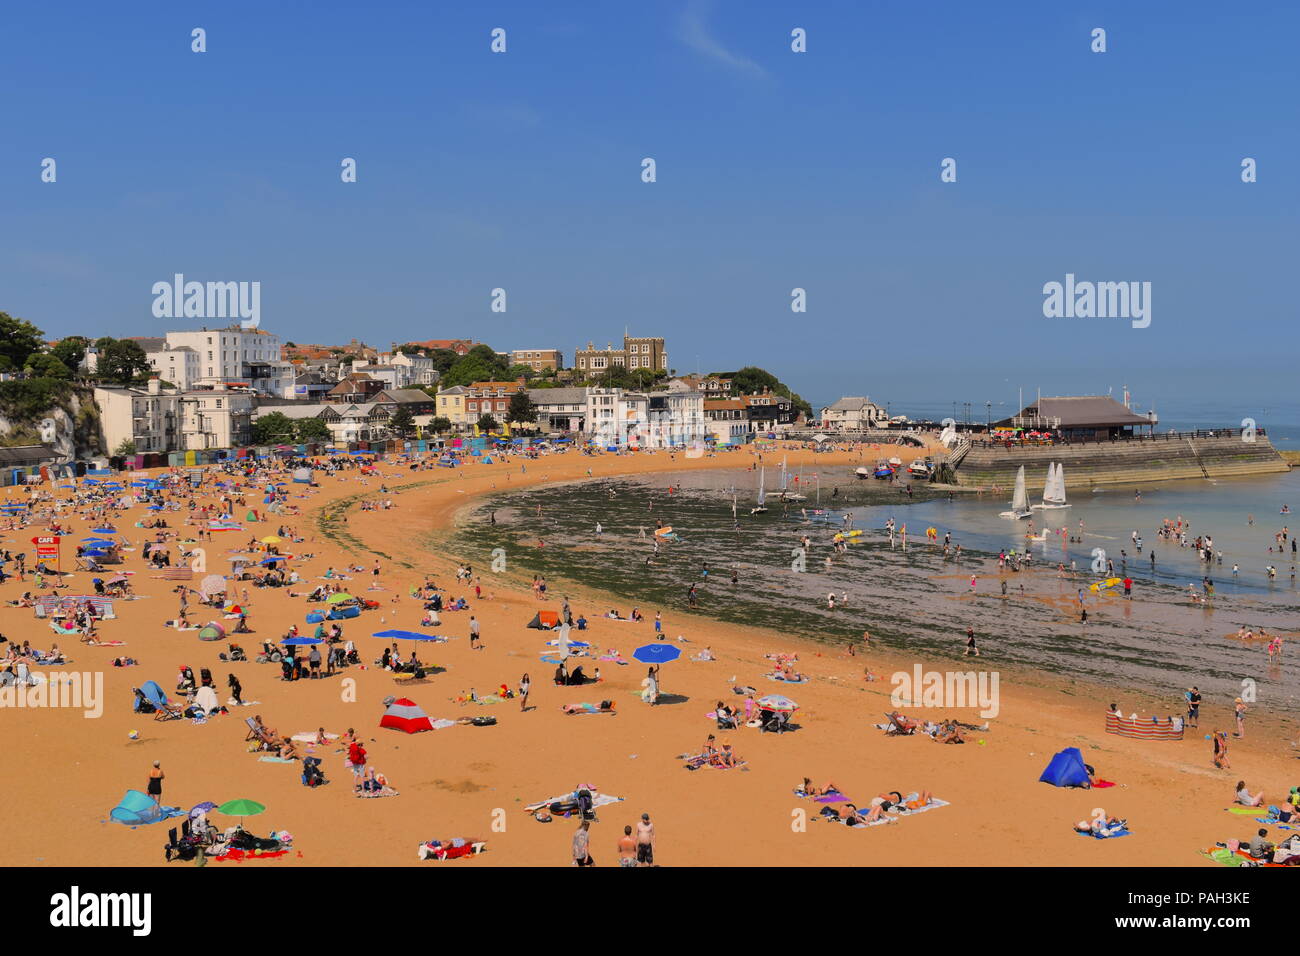 Inghilterra, Broadstairs. Pranzo Spiaggia con sun bagnanti durante la canicola estiva. Porto in background. Broadstairs, Kent, Regno Unito, Luglio 2018 Foto Stock